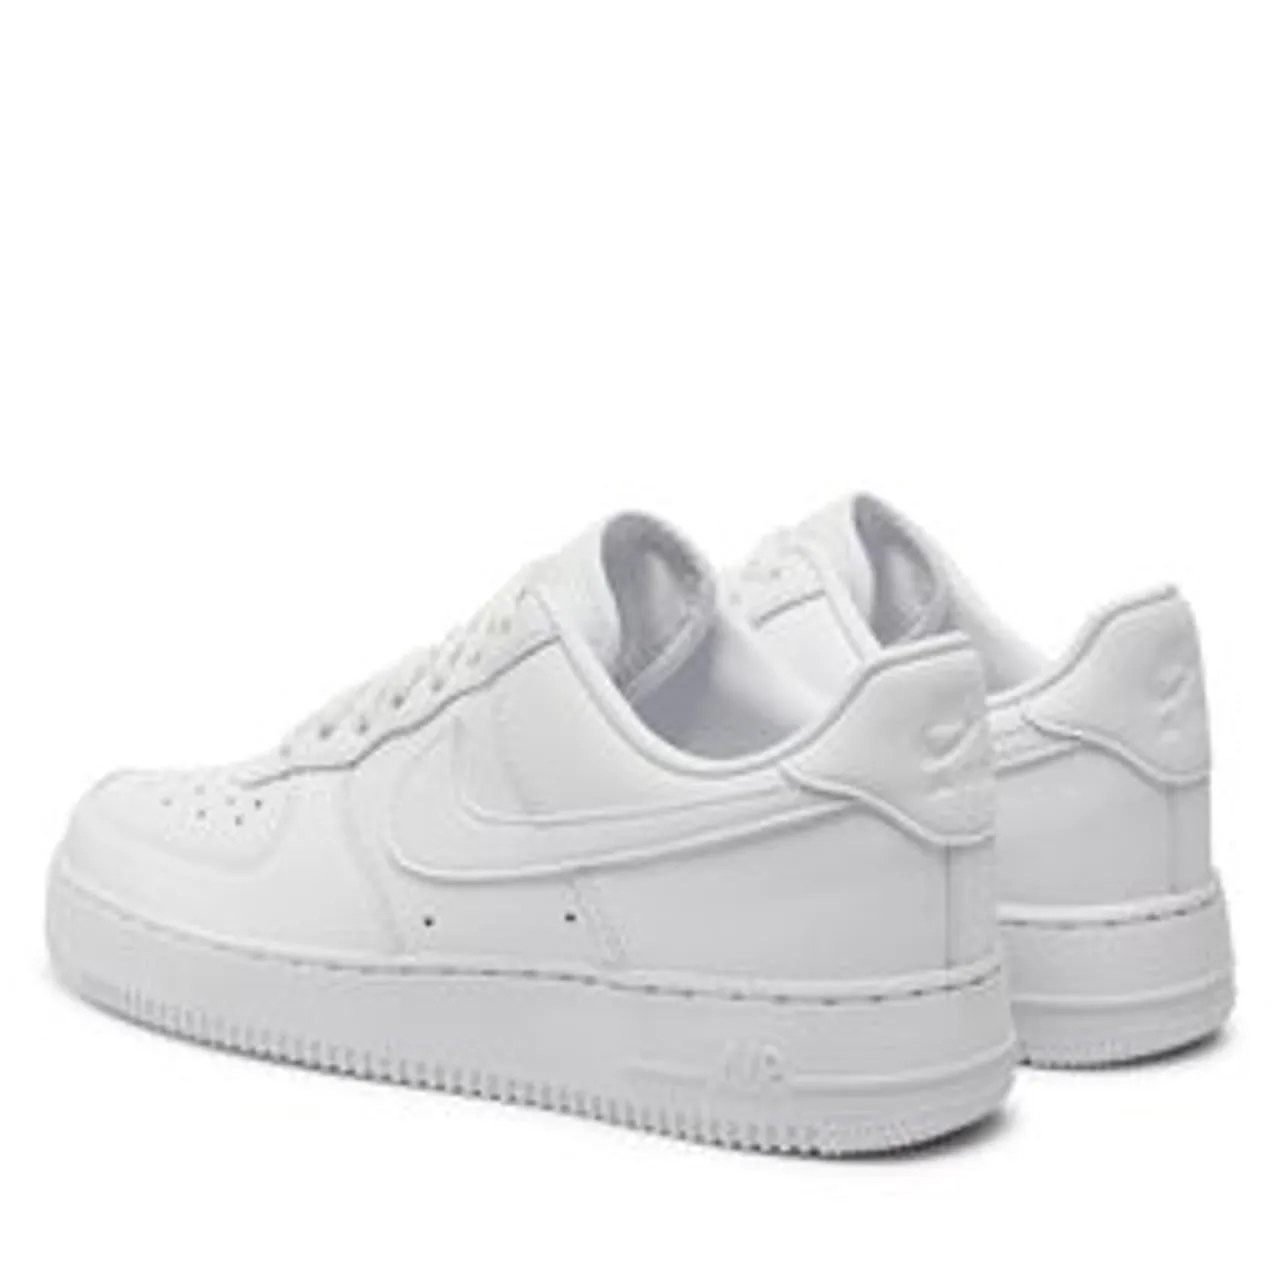 Schuhe Nike Air Force 1 '07 Fresh DM0211 100 White/White/White